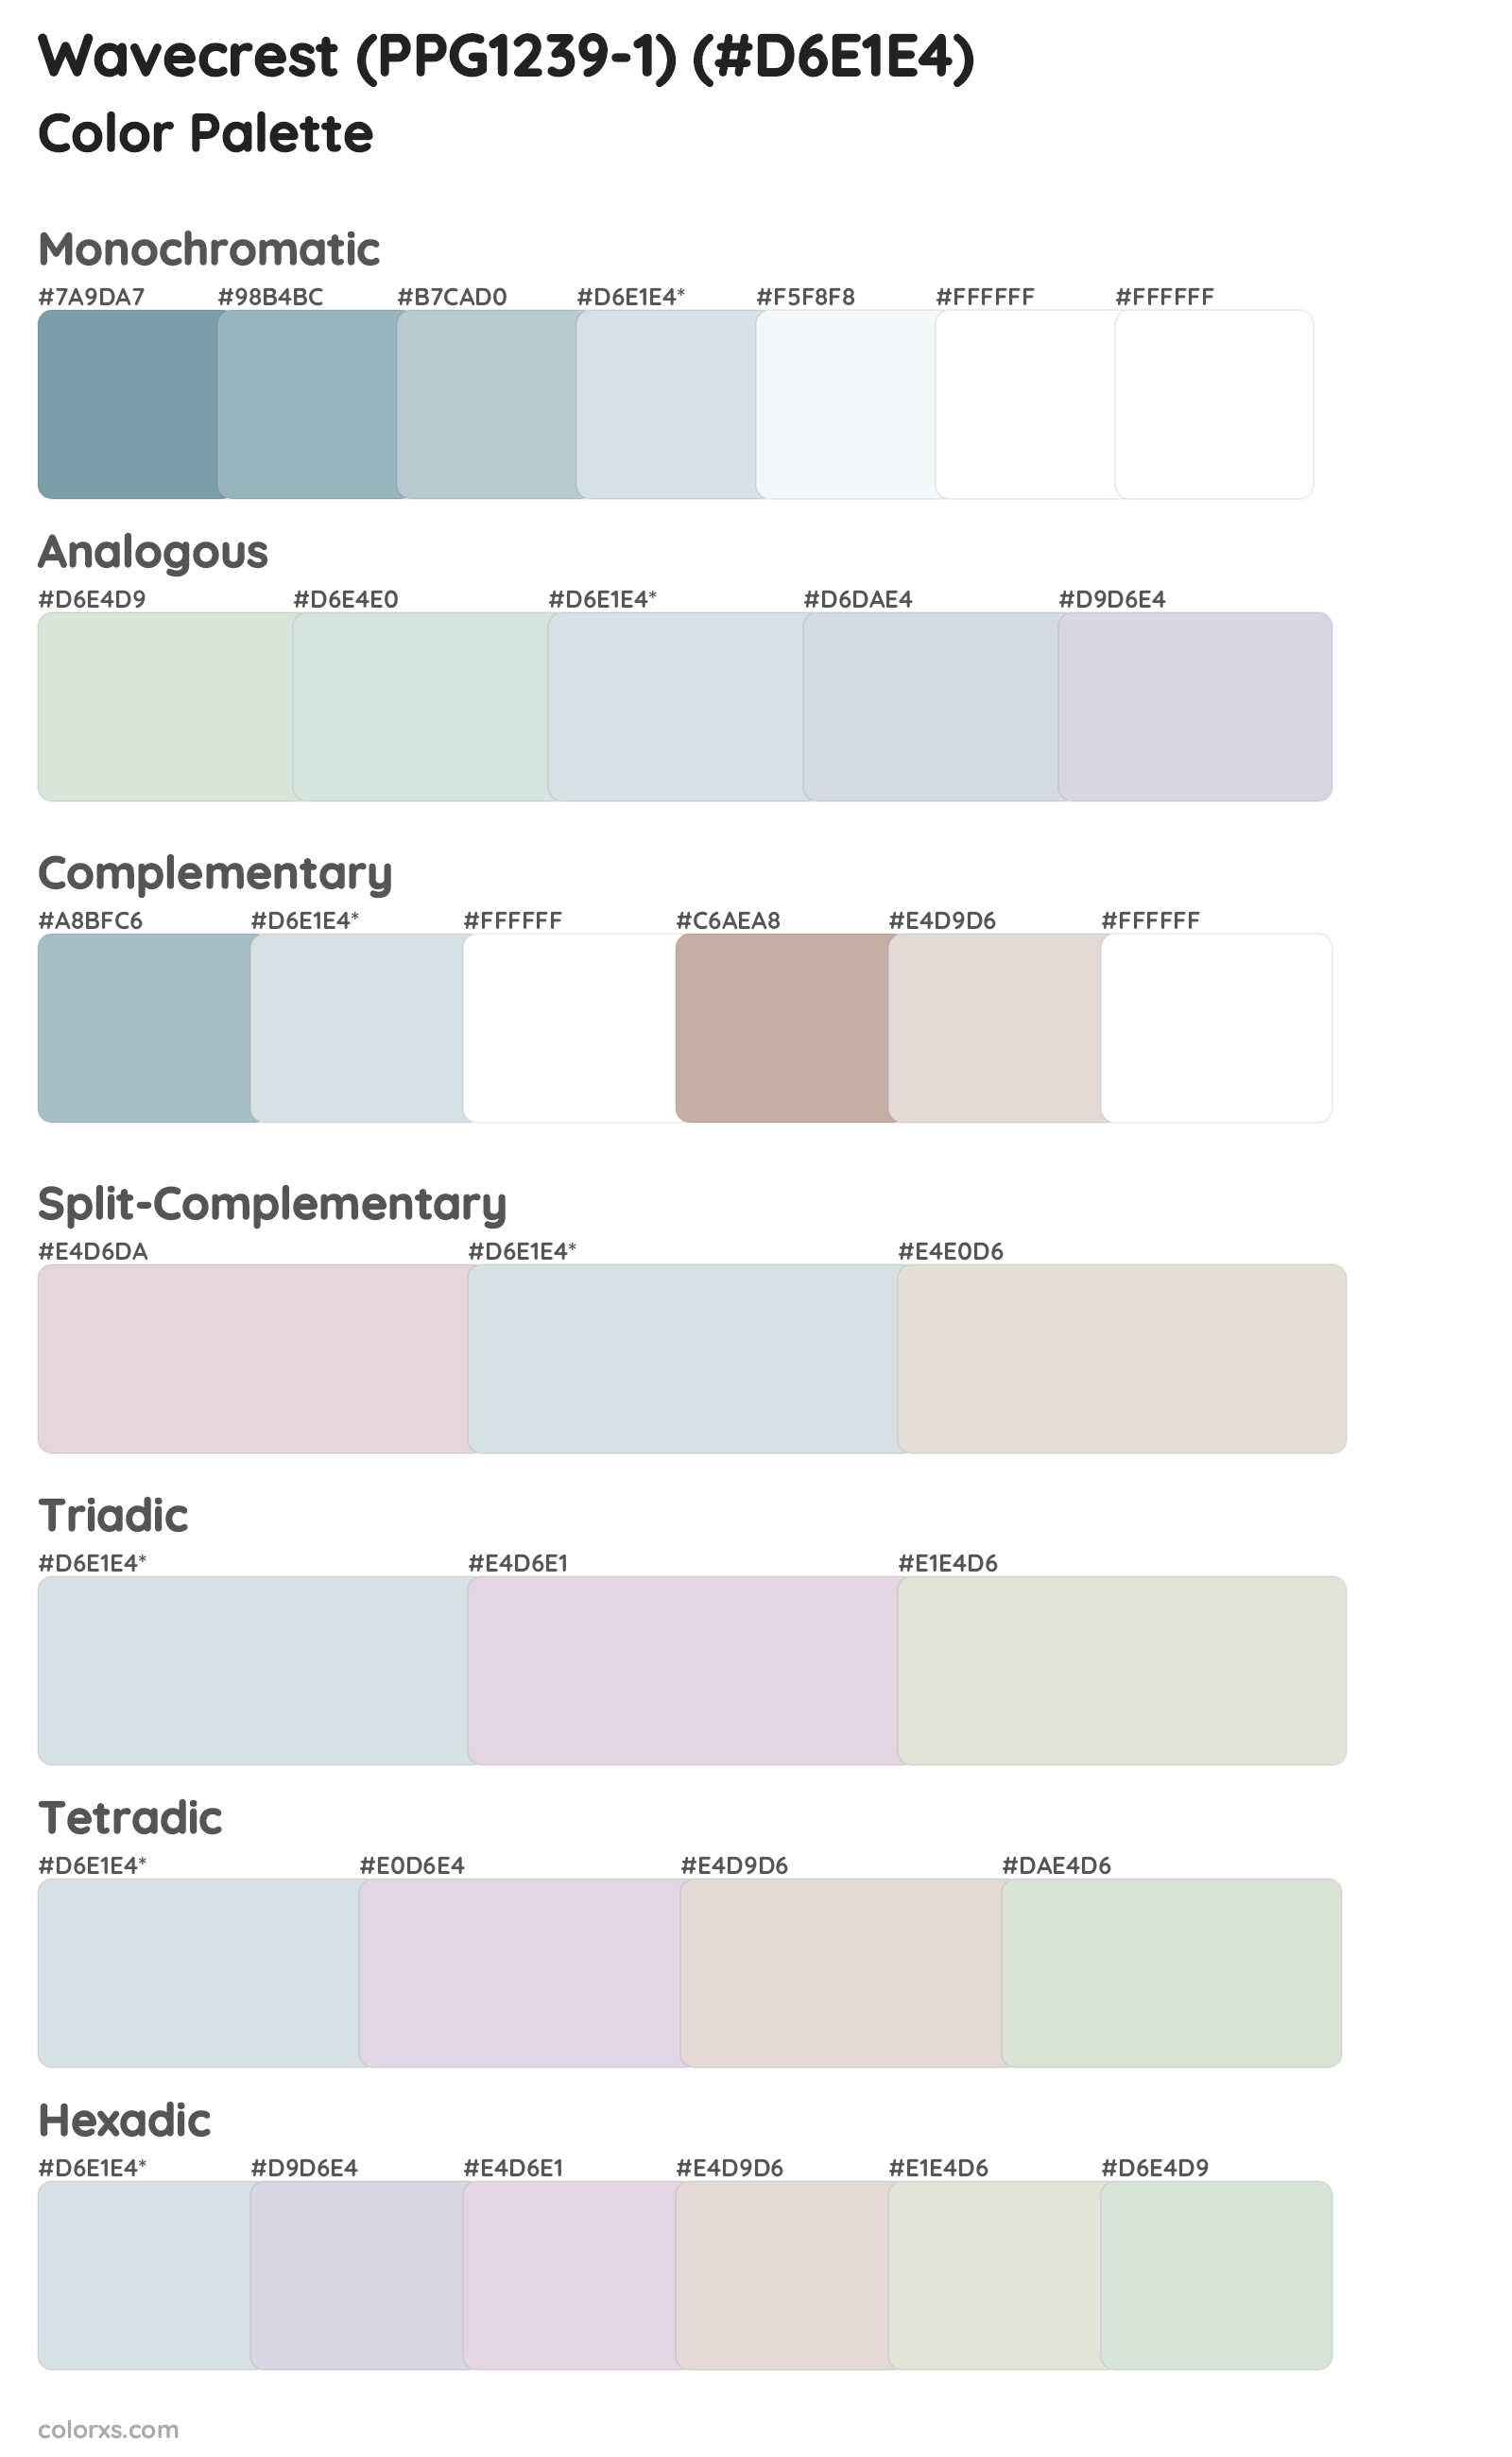 Wavecrest (PPG1239-1) Color Scheme Palettes